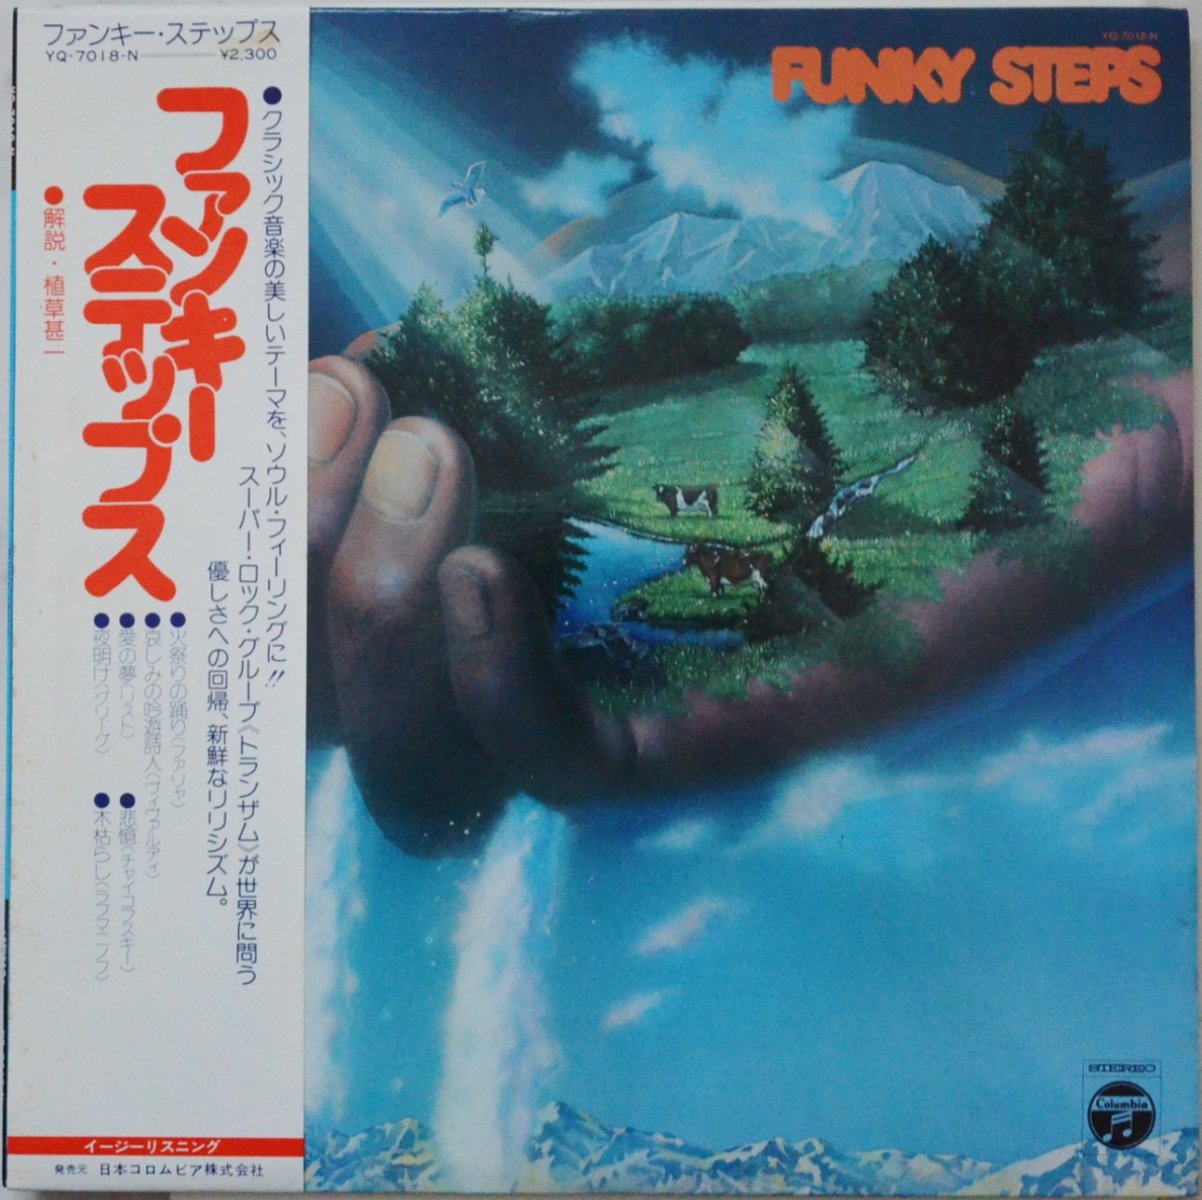 トランザム TRANZAM / ファンキー・ステップス FUNKY STEPS (LP)